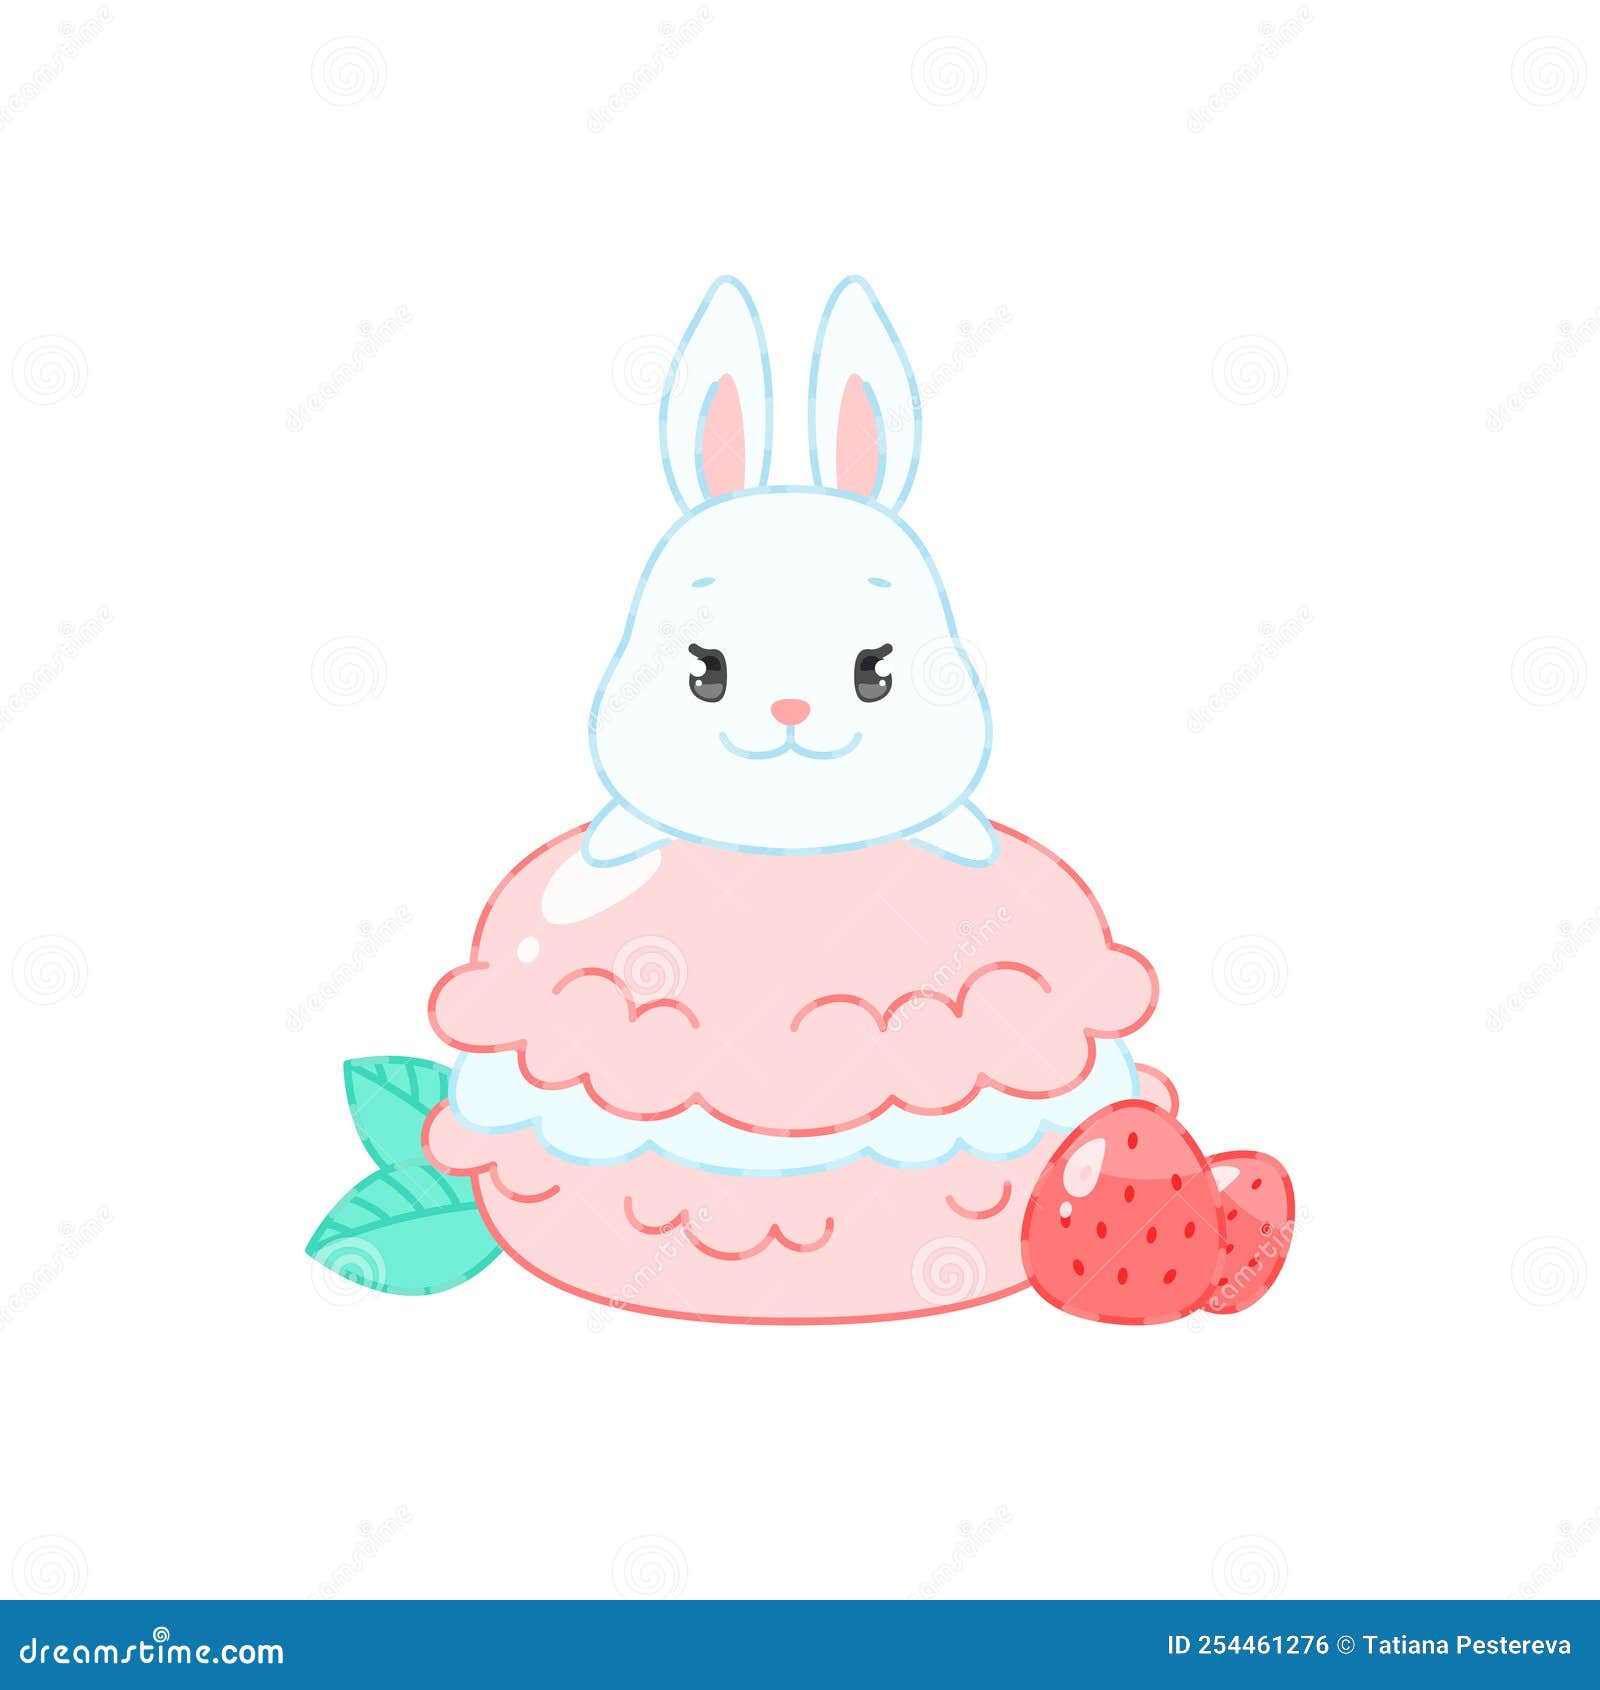 可愛的卡通兔子和草莓無縫模式 向量, 無縫模式, 草莓, 兔子向量圖案素材免費下載，PNG，EPS和AI素材下載 - Pngtree